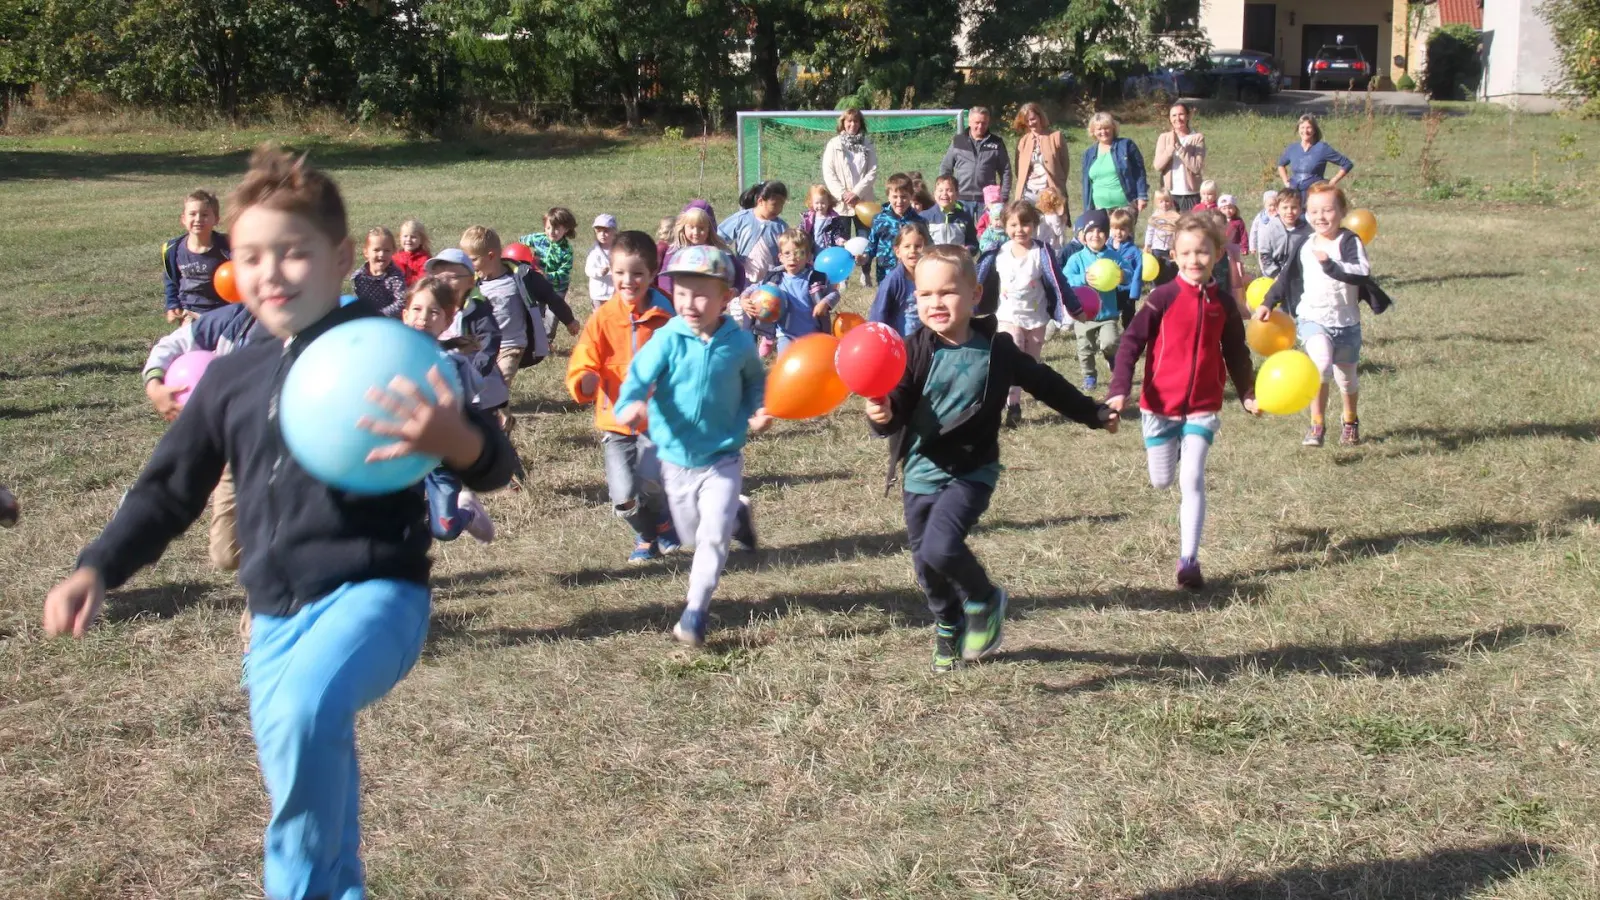 Festwiese Dewitz: Fußballfläche für Kita-Kinder offiziell eröffnet (Foto: taucha-kompakt.de)